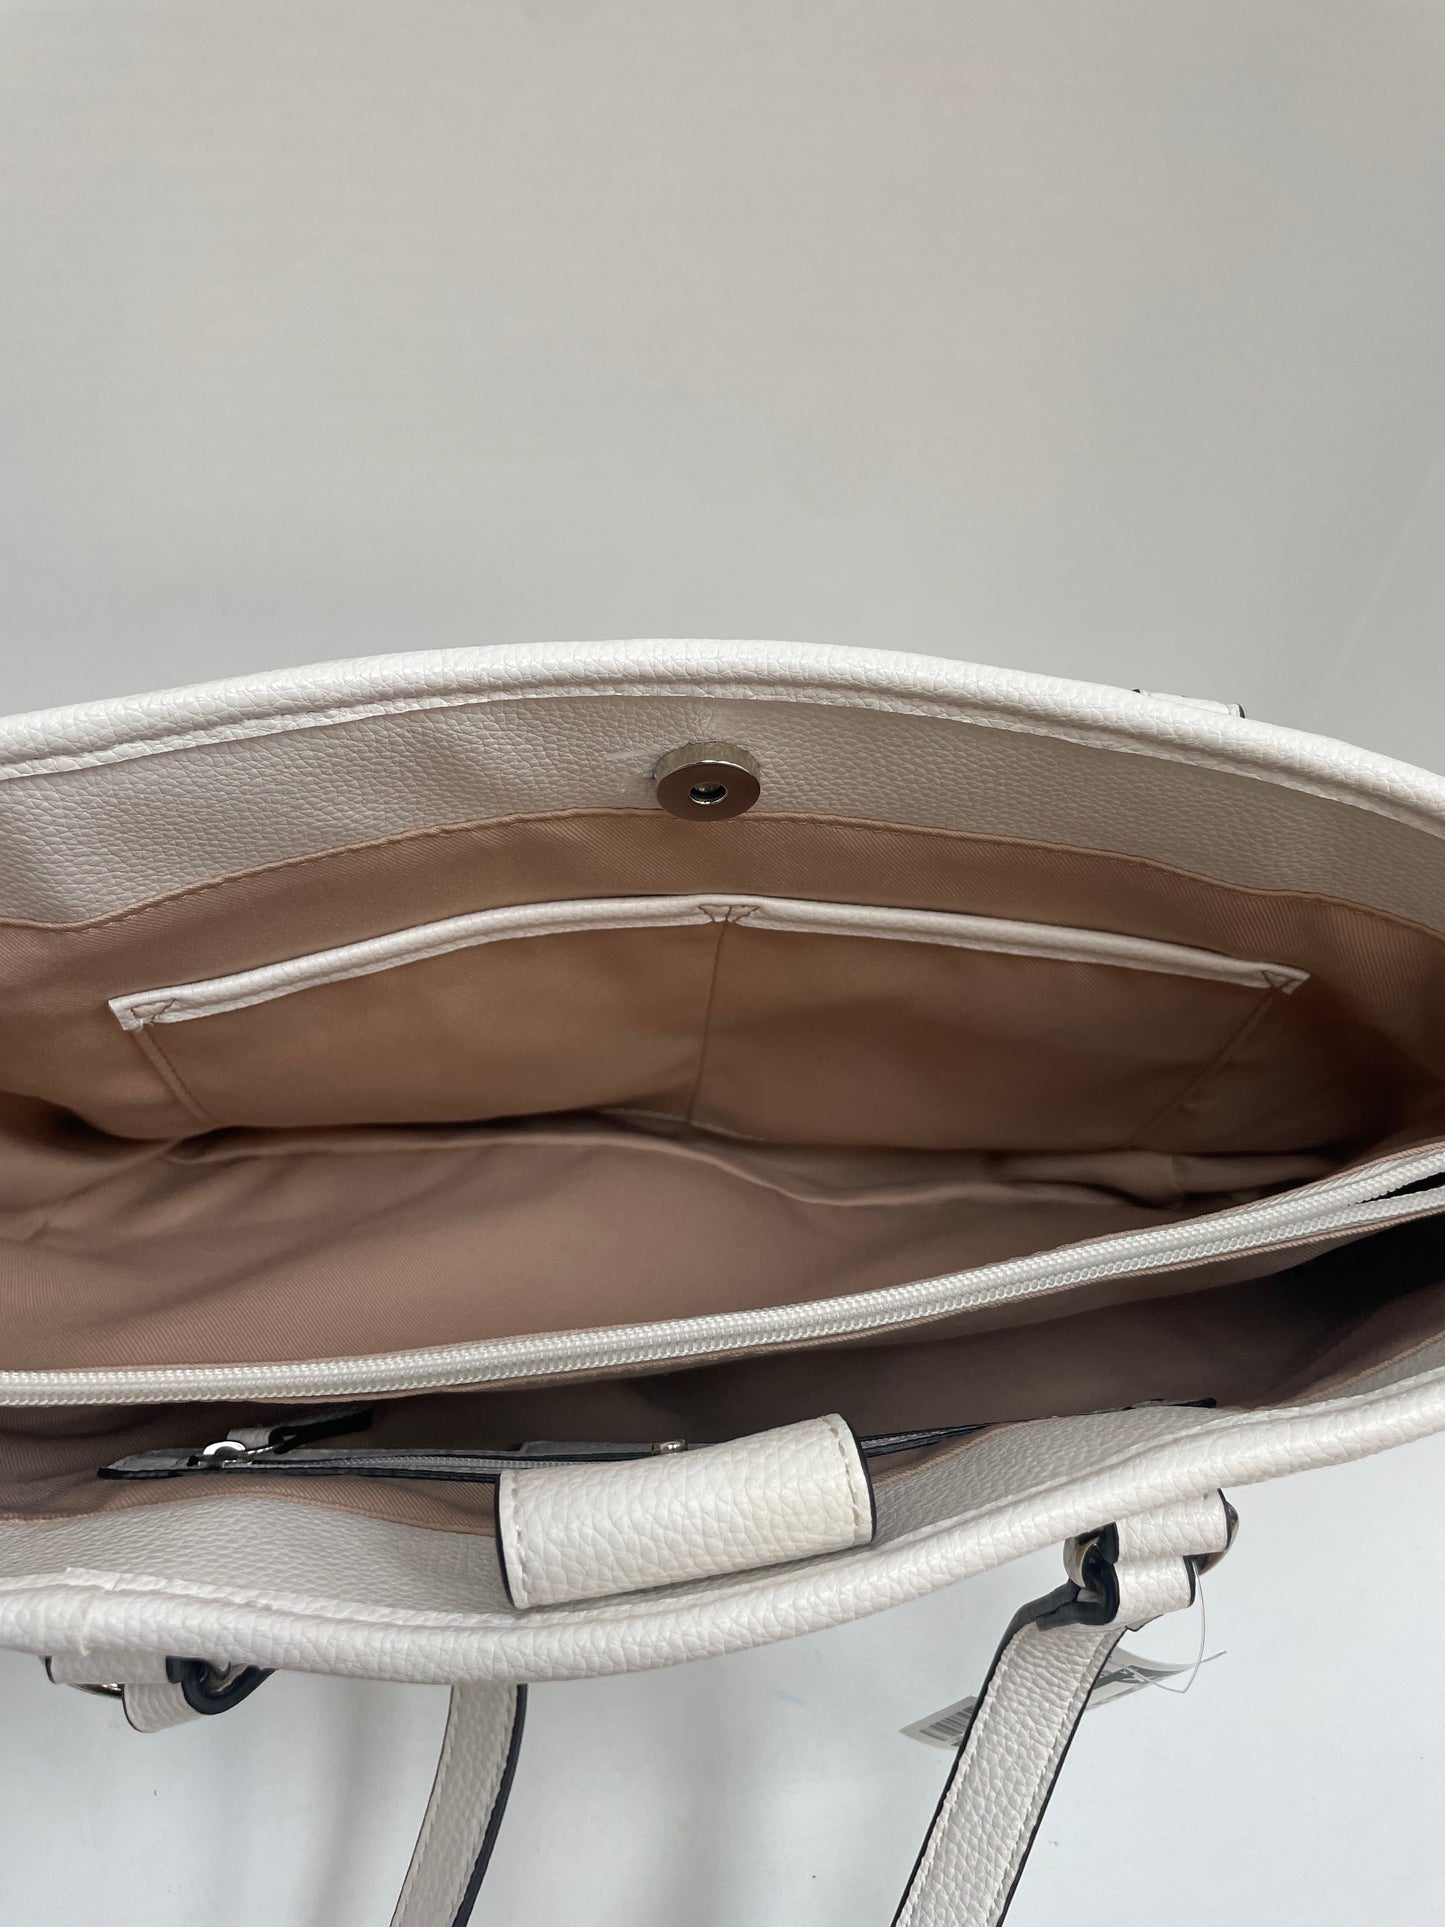 Handbag By Dana Buchman  Size: Medium